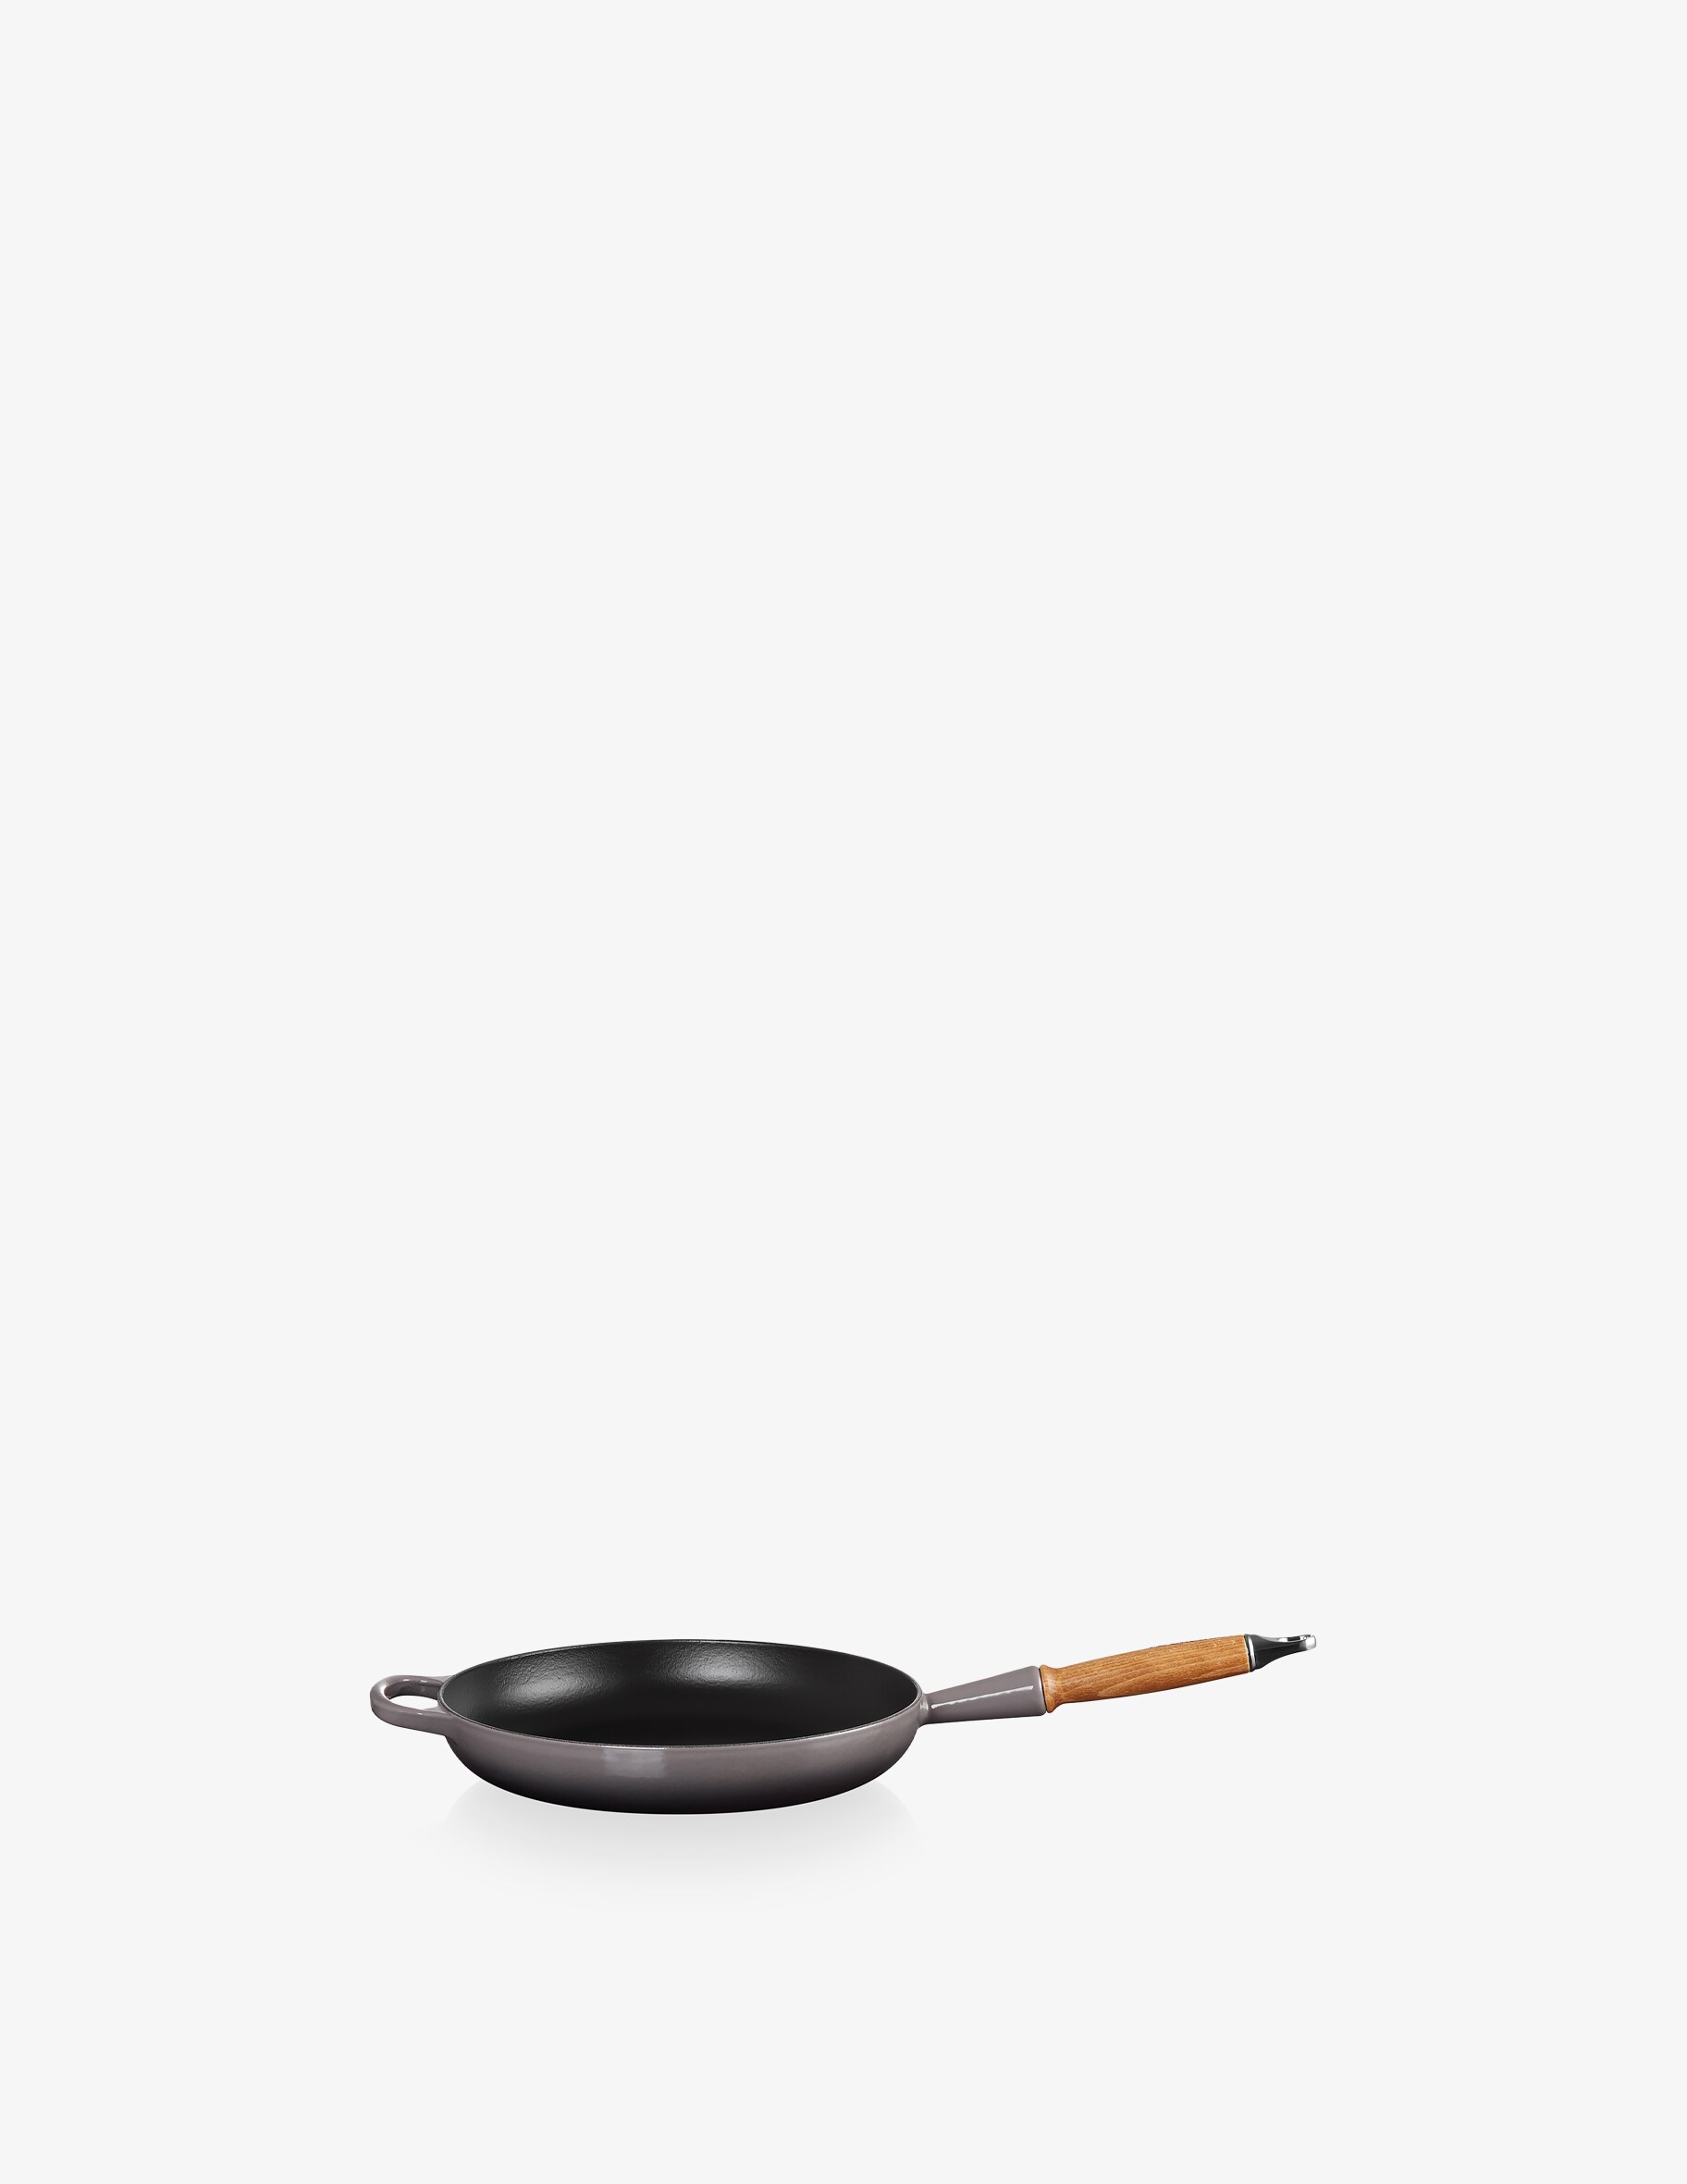 Фирменная сковорода с деревянной ручкой Le Creuset, цвет Flint набор винных аксессуаров le creuset сталь нержавеющая черный